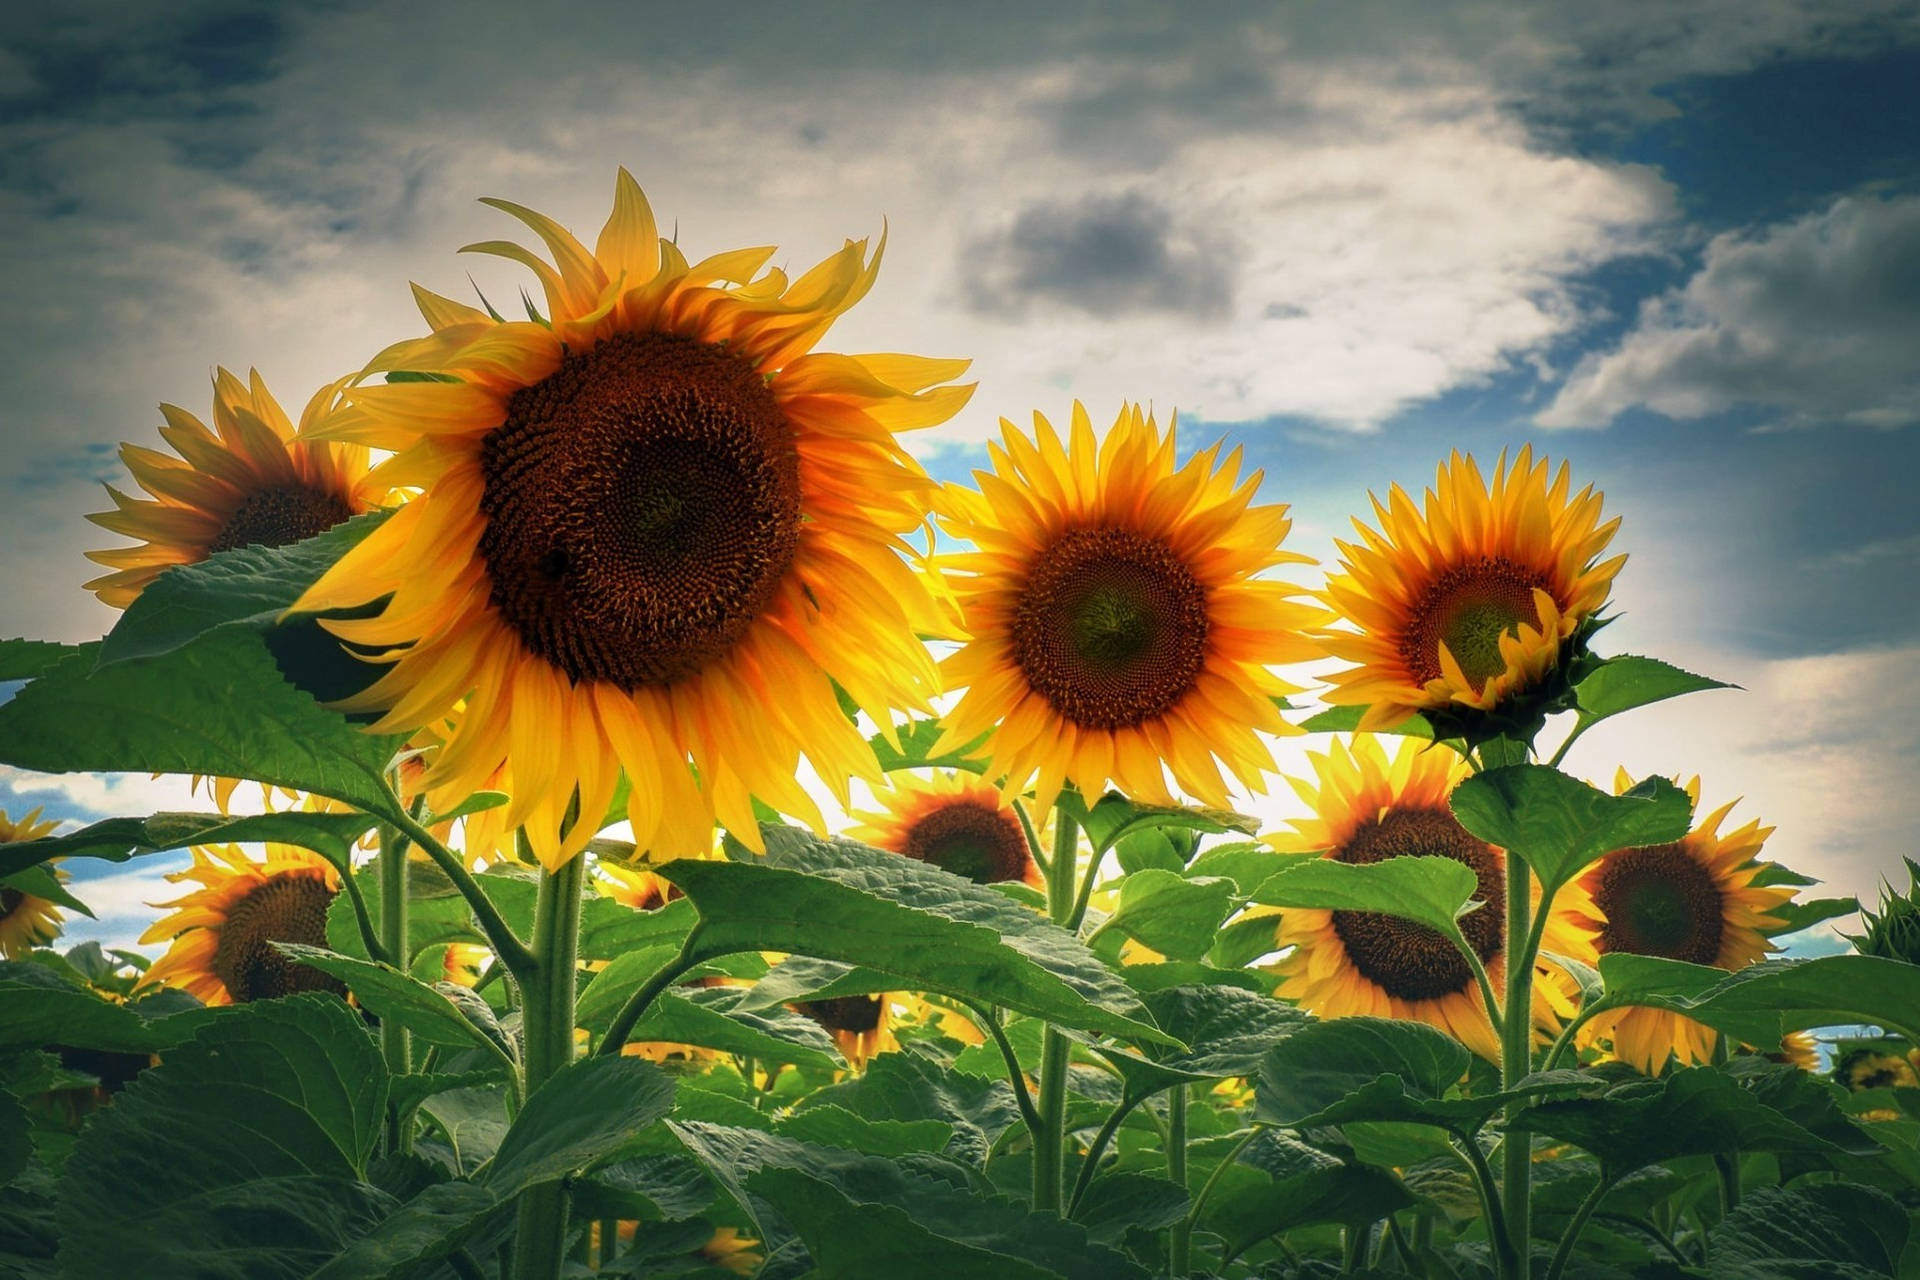 A desktop wallpaper of a beautiful sunflower Wallpaper